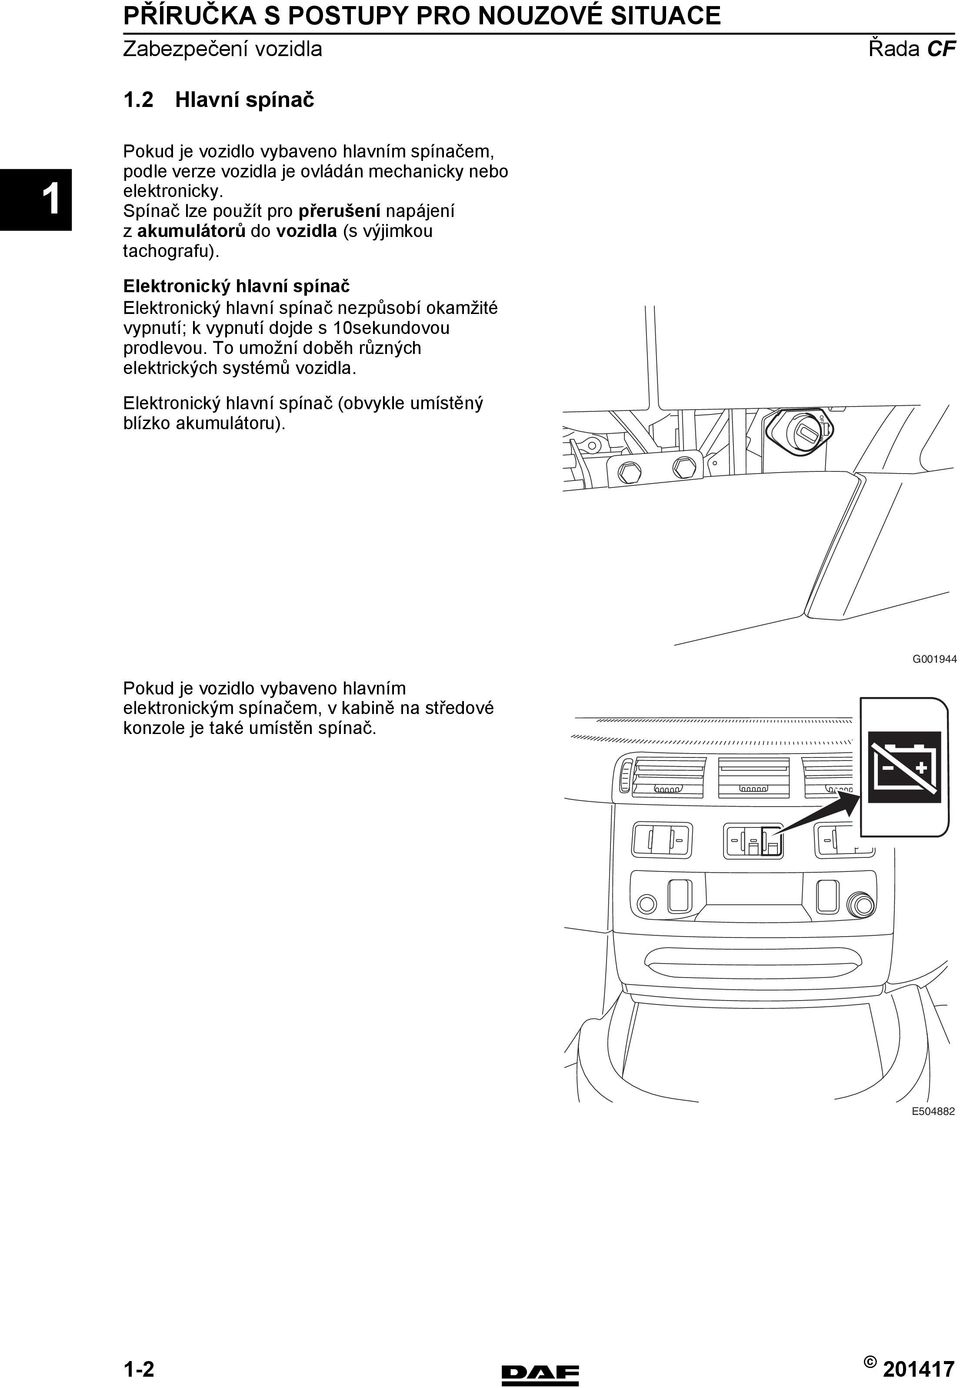 Spínač lze použít pro přerušení napájení z akumulátorů do vozidla (s výjimkou tachografu).